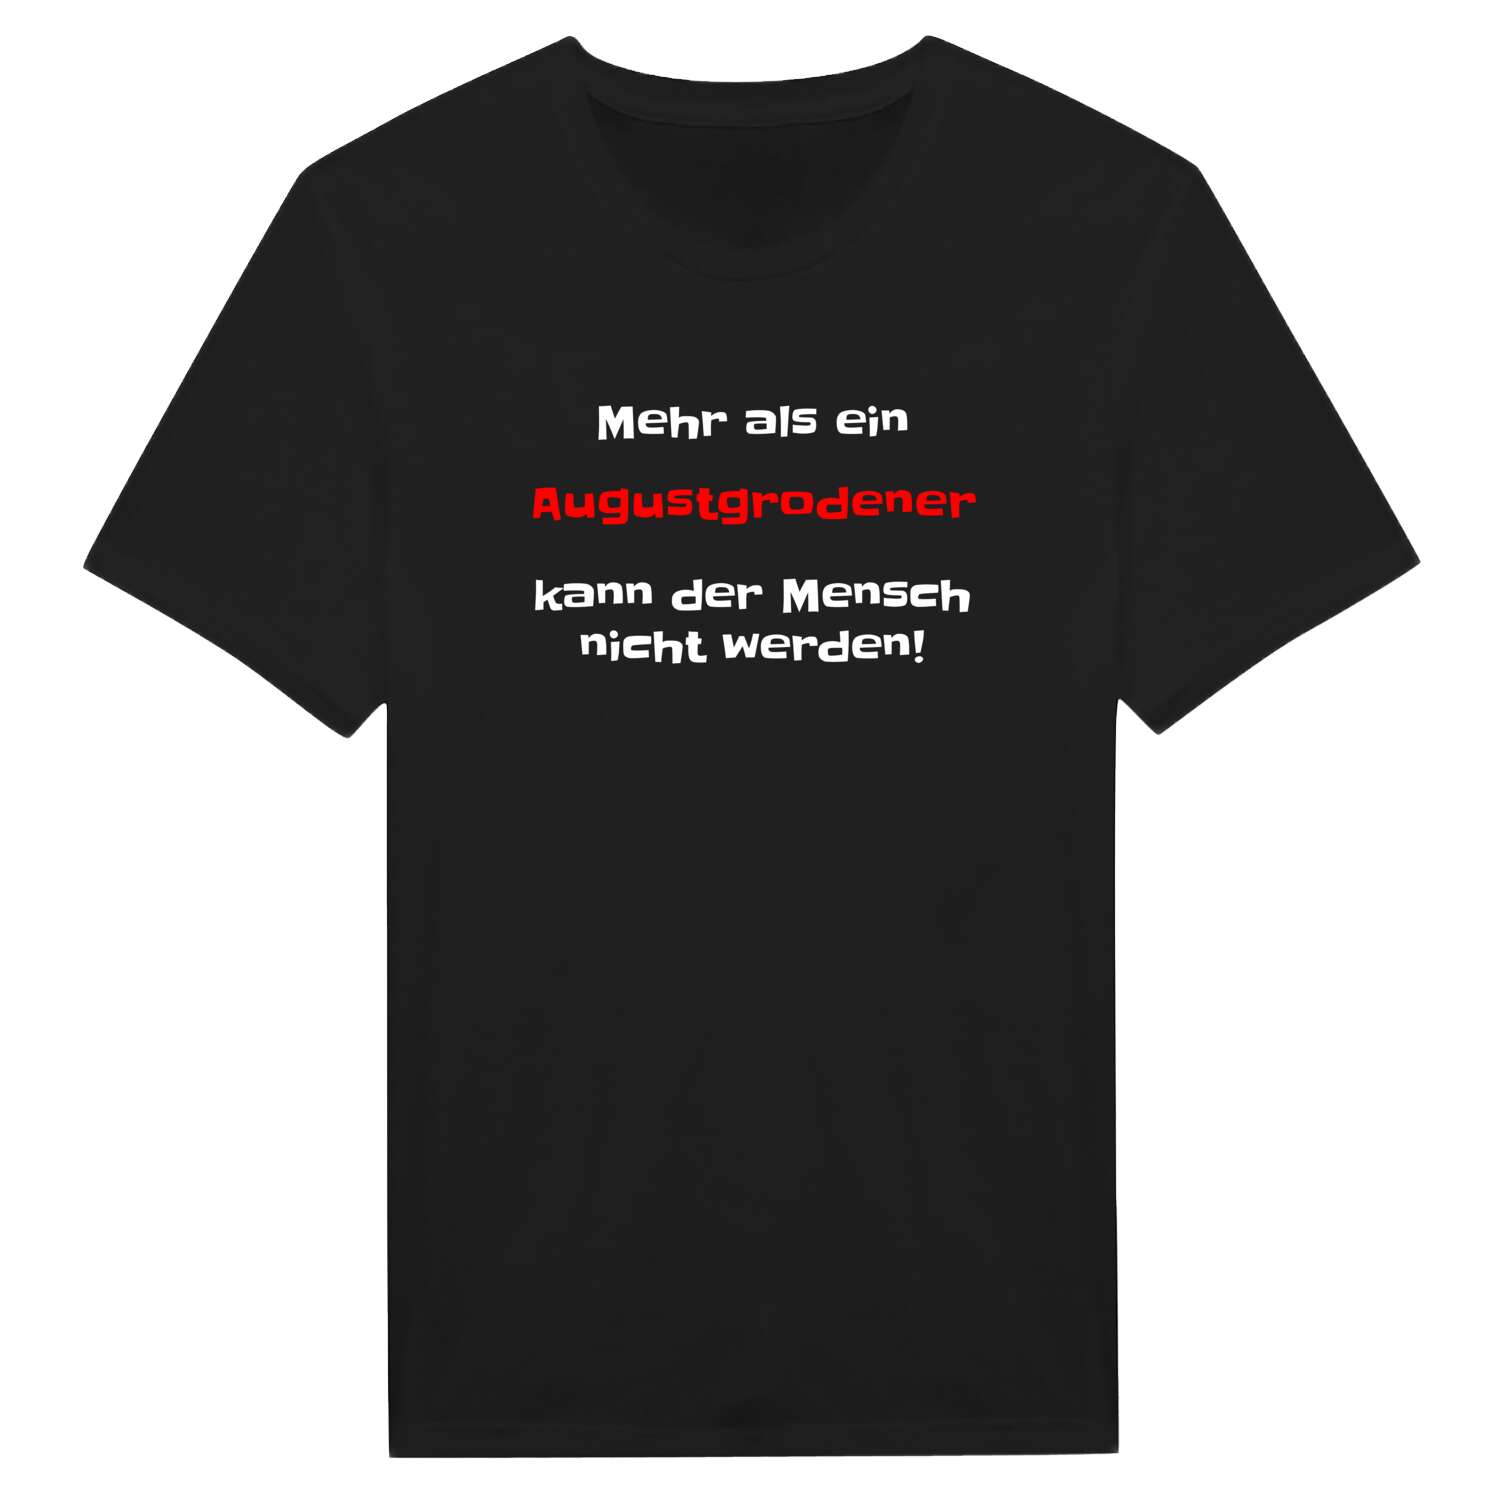 Augustgroden T-Shirt »Mehr als ein«